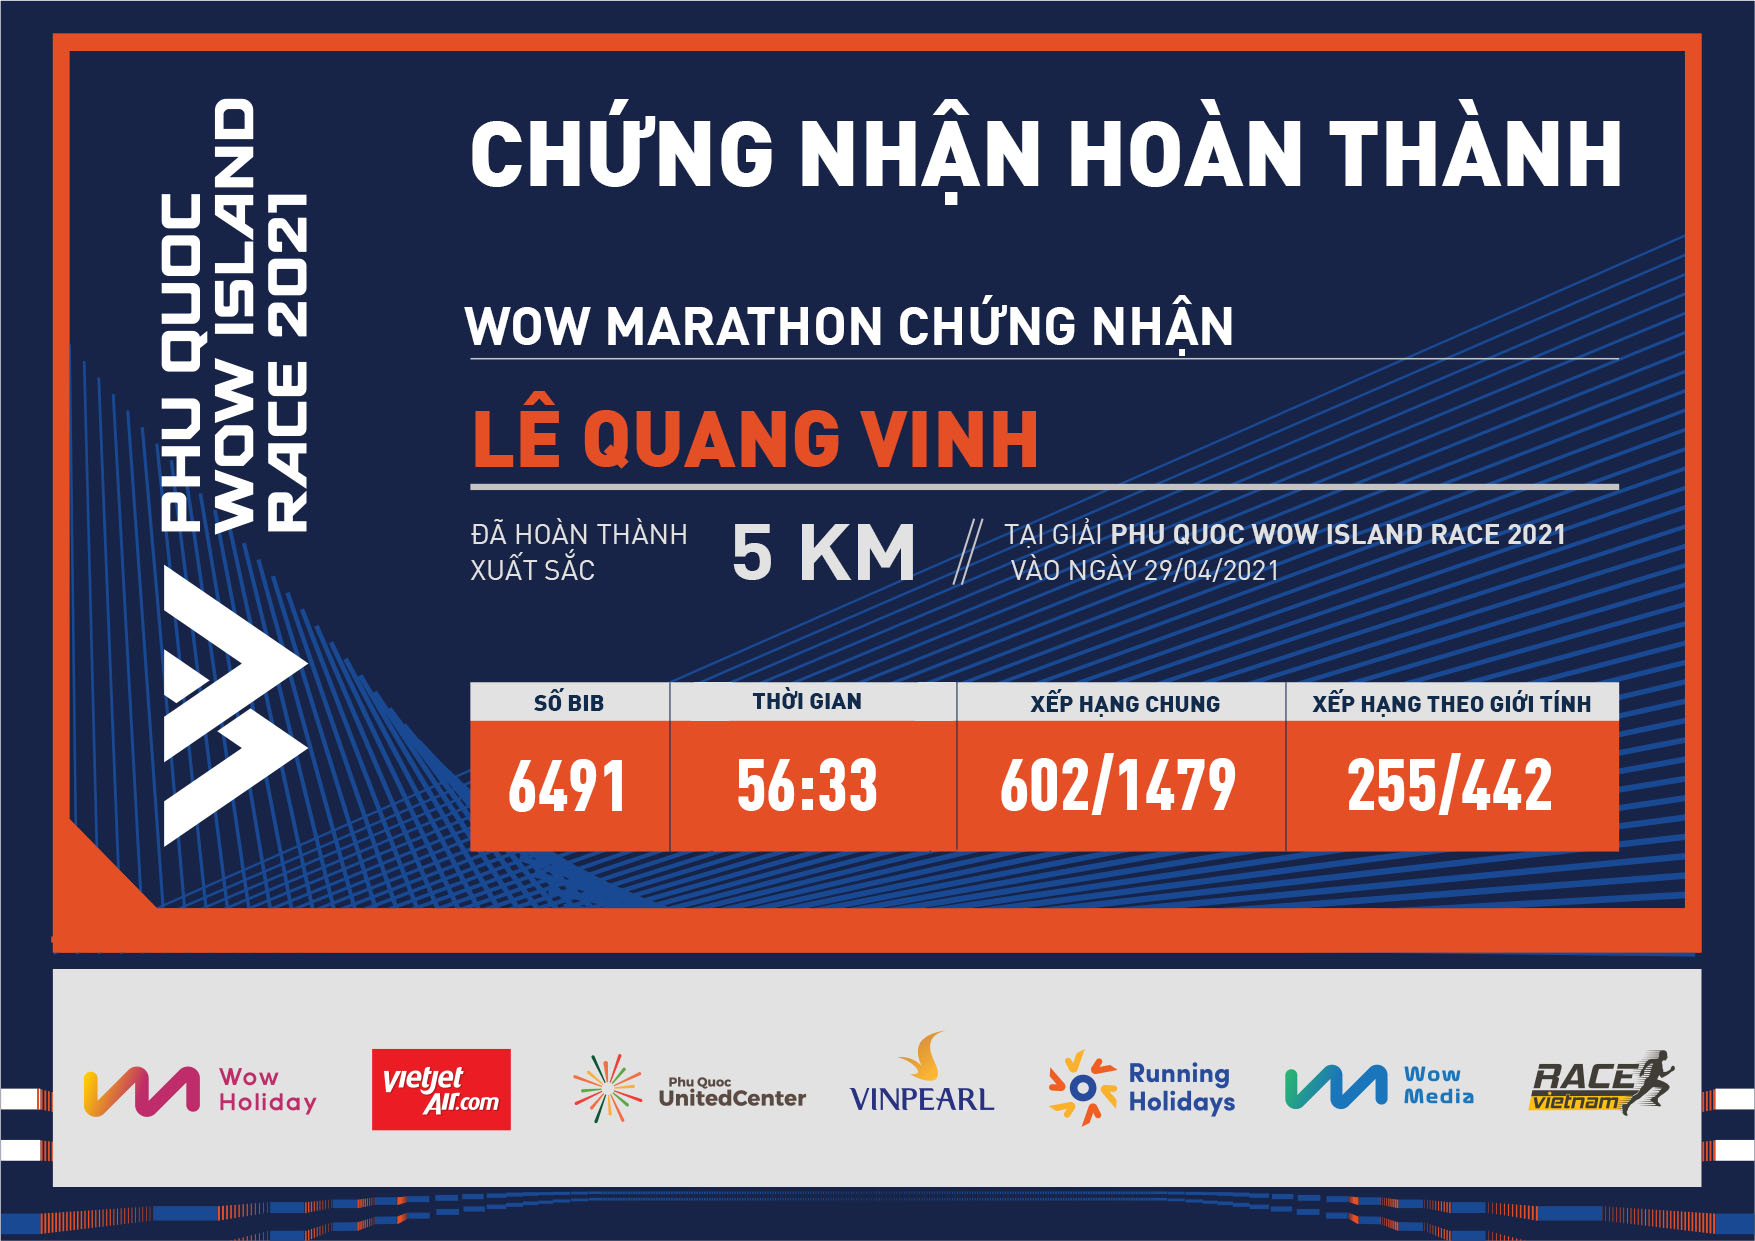 6491 - Lê Quang Vinh